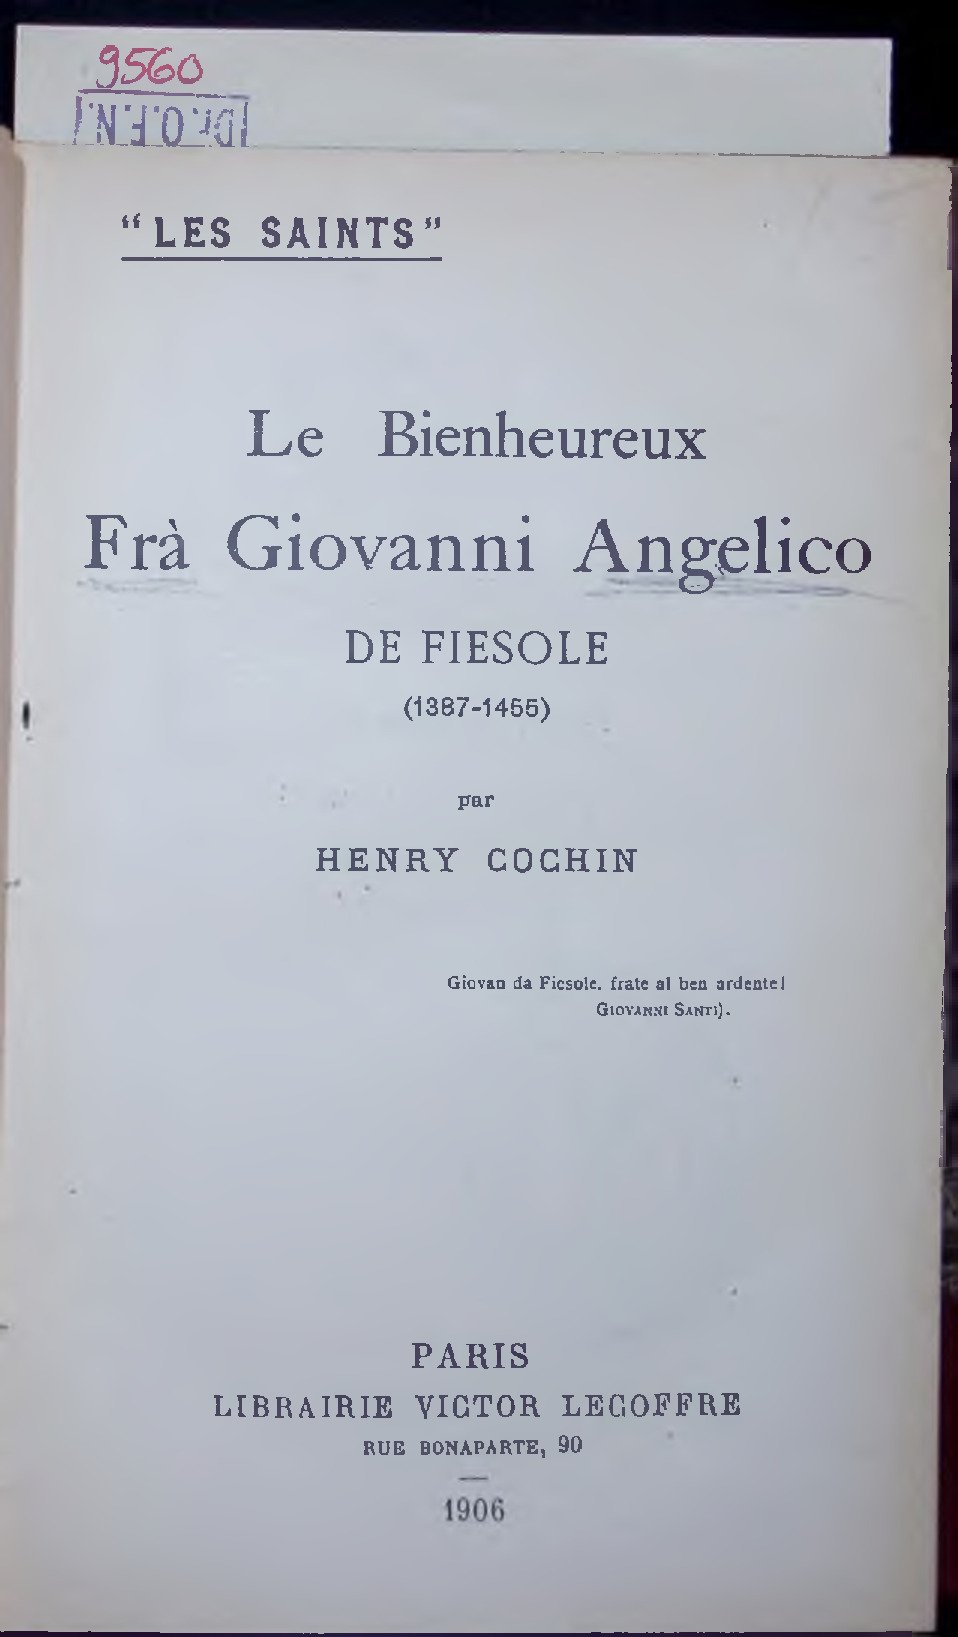 Le Bienheureux Frà Giovanni Angelico. DE FIESOLE (1387-1455) - COCHIN, HENRY